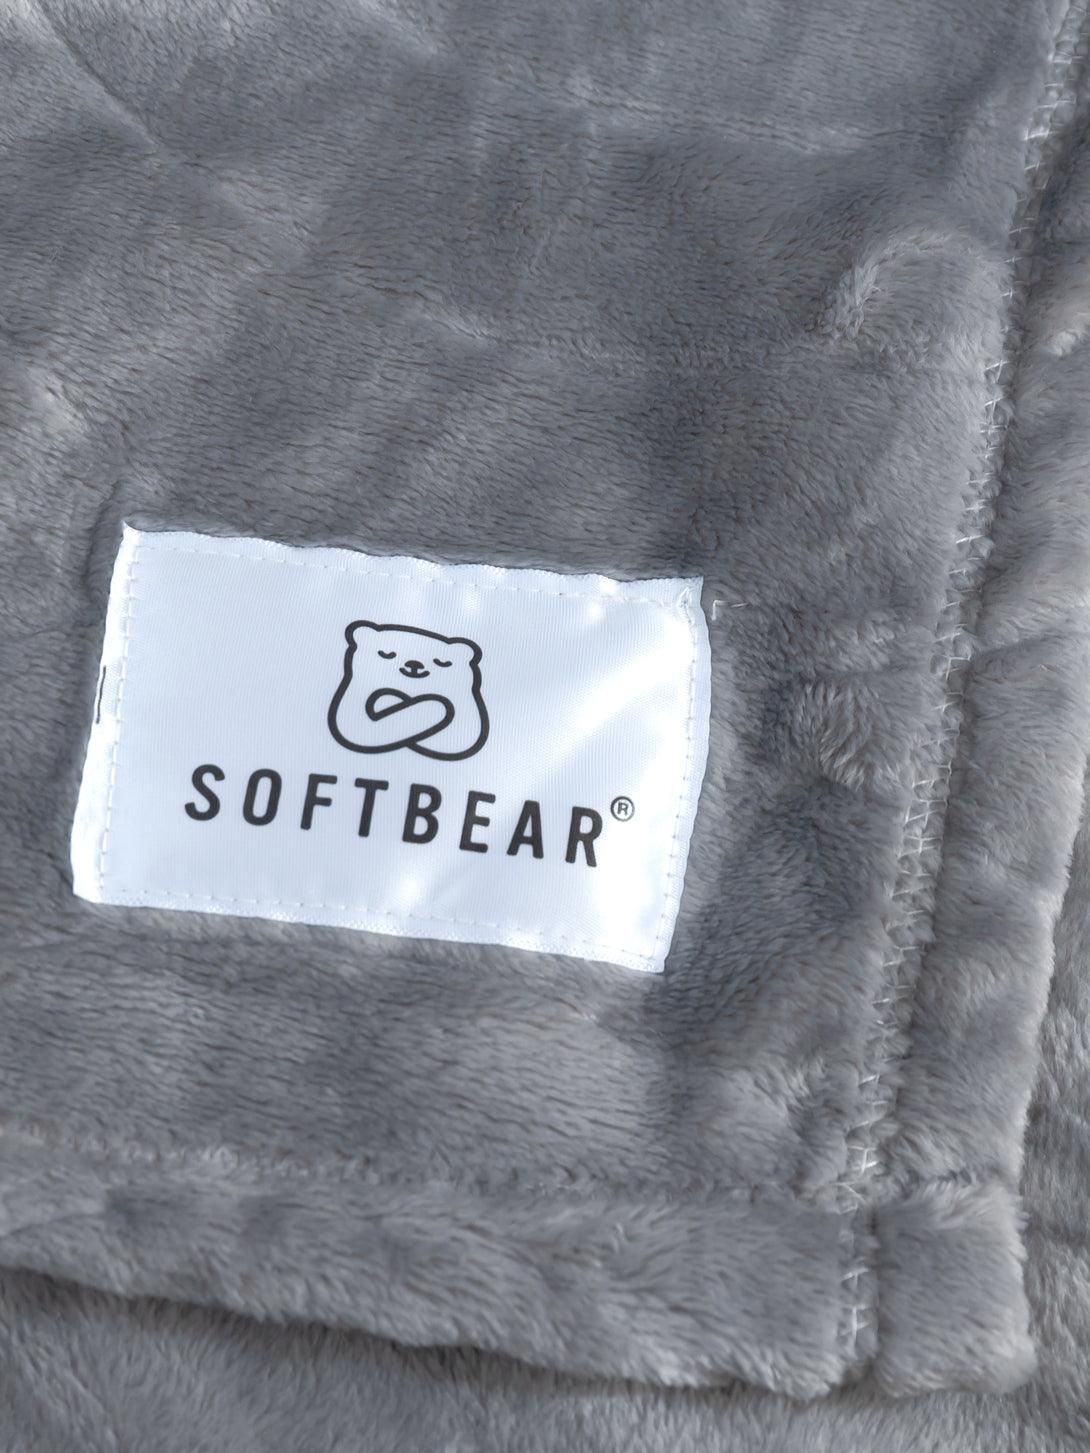 softbear fleece blanket